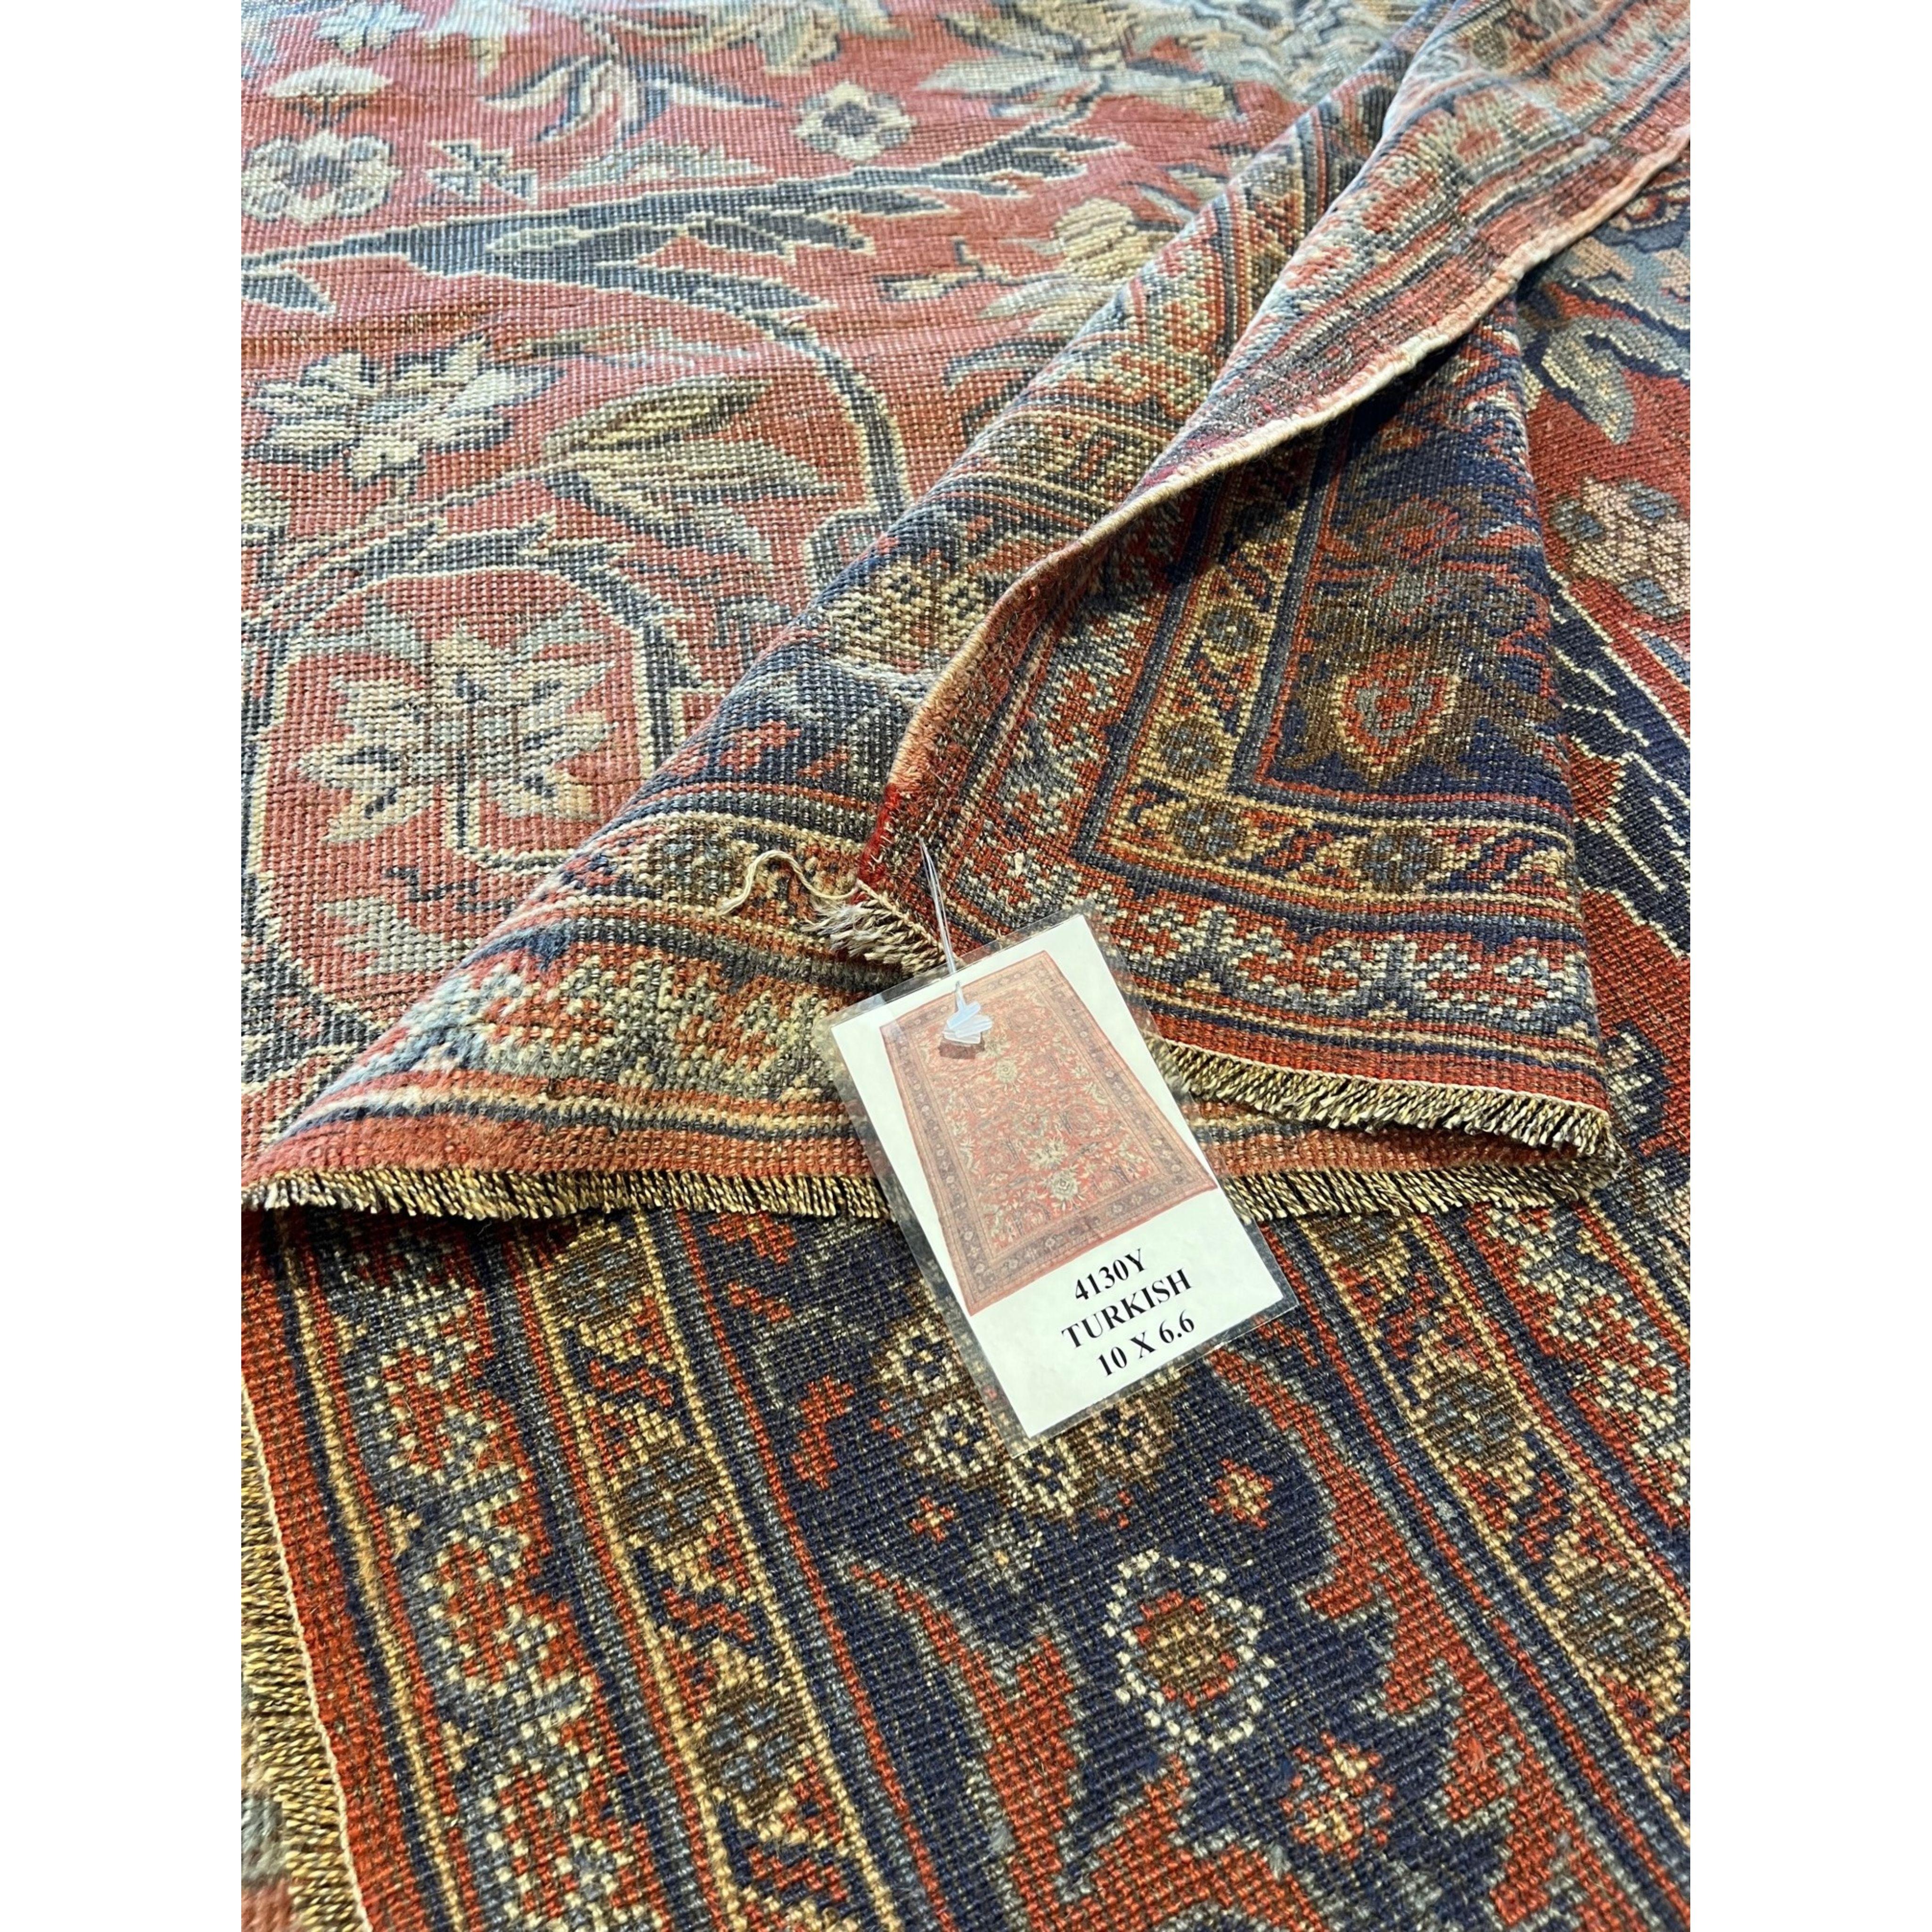 Les tapis turcs (également appelés tapis d'Anatolie) sont sans doute les tapis qui ont tout déclenché. Ces tapis font partie de la première vague de tapis anciens orientaux exportés en Europe. Les tapis turcs vintage étaient des produits très prisés